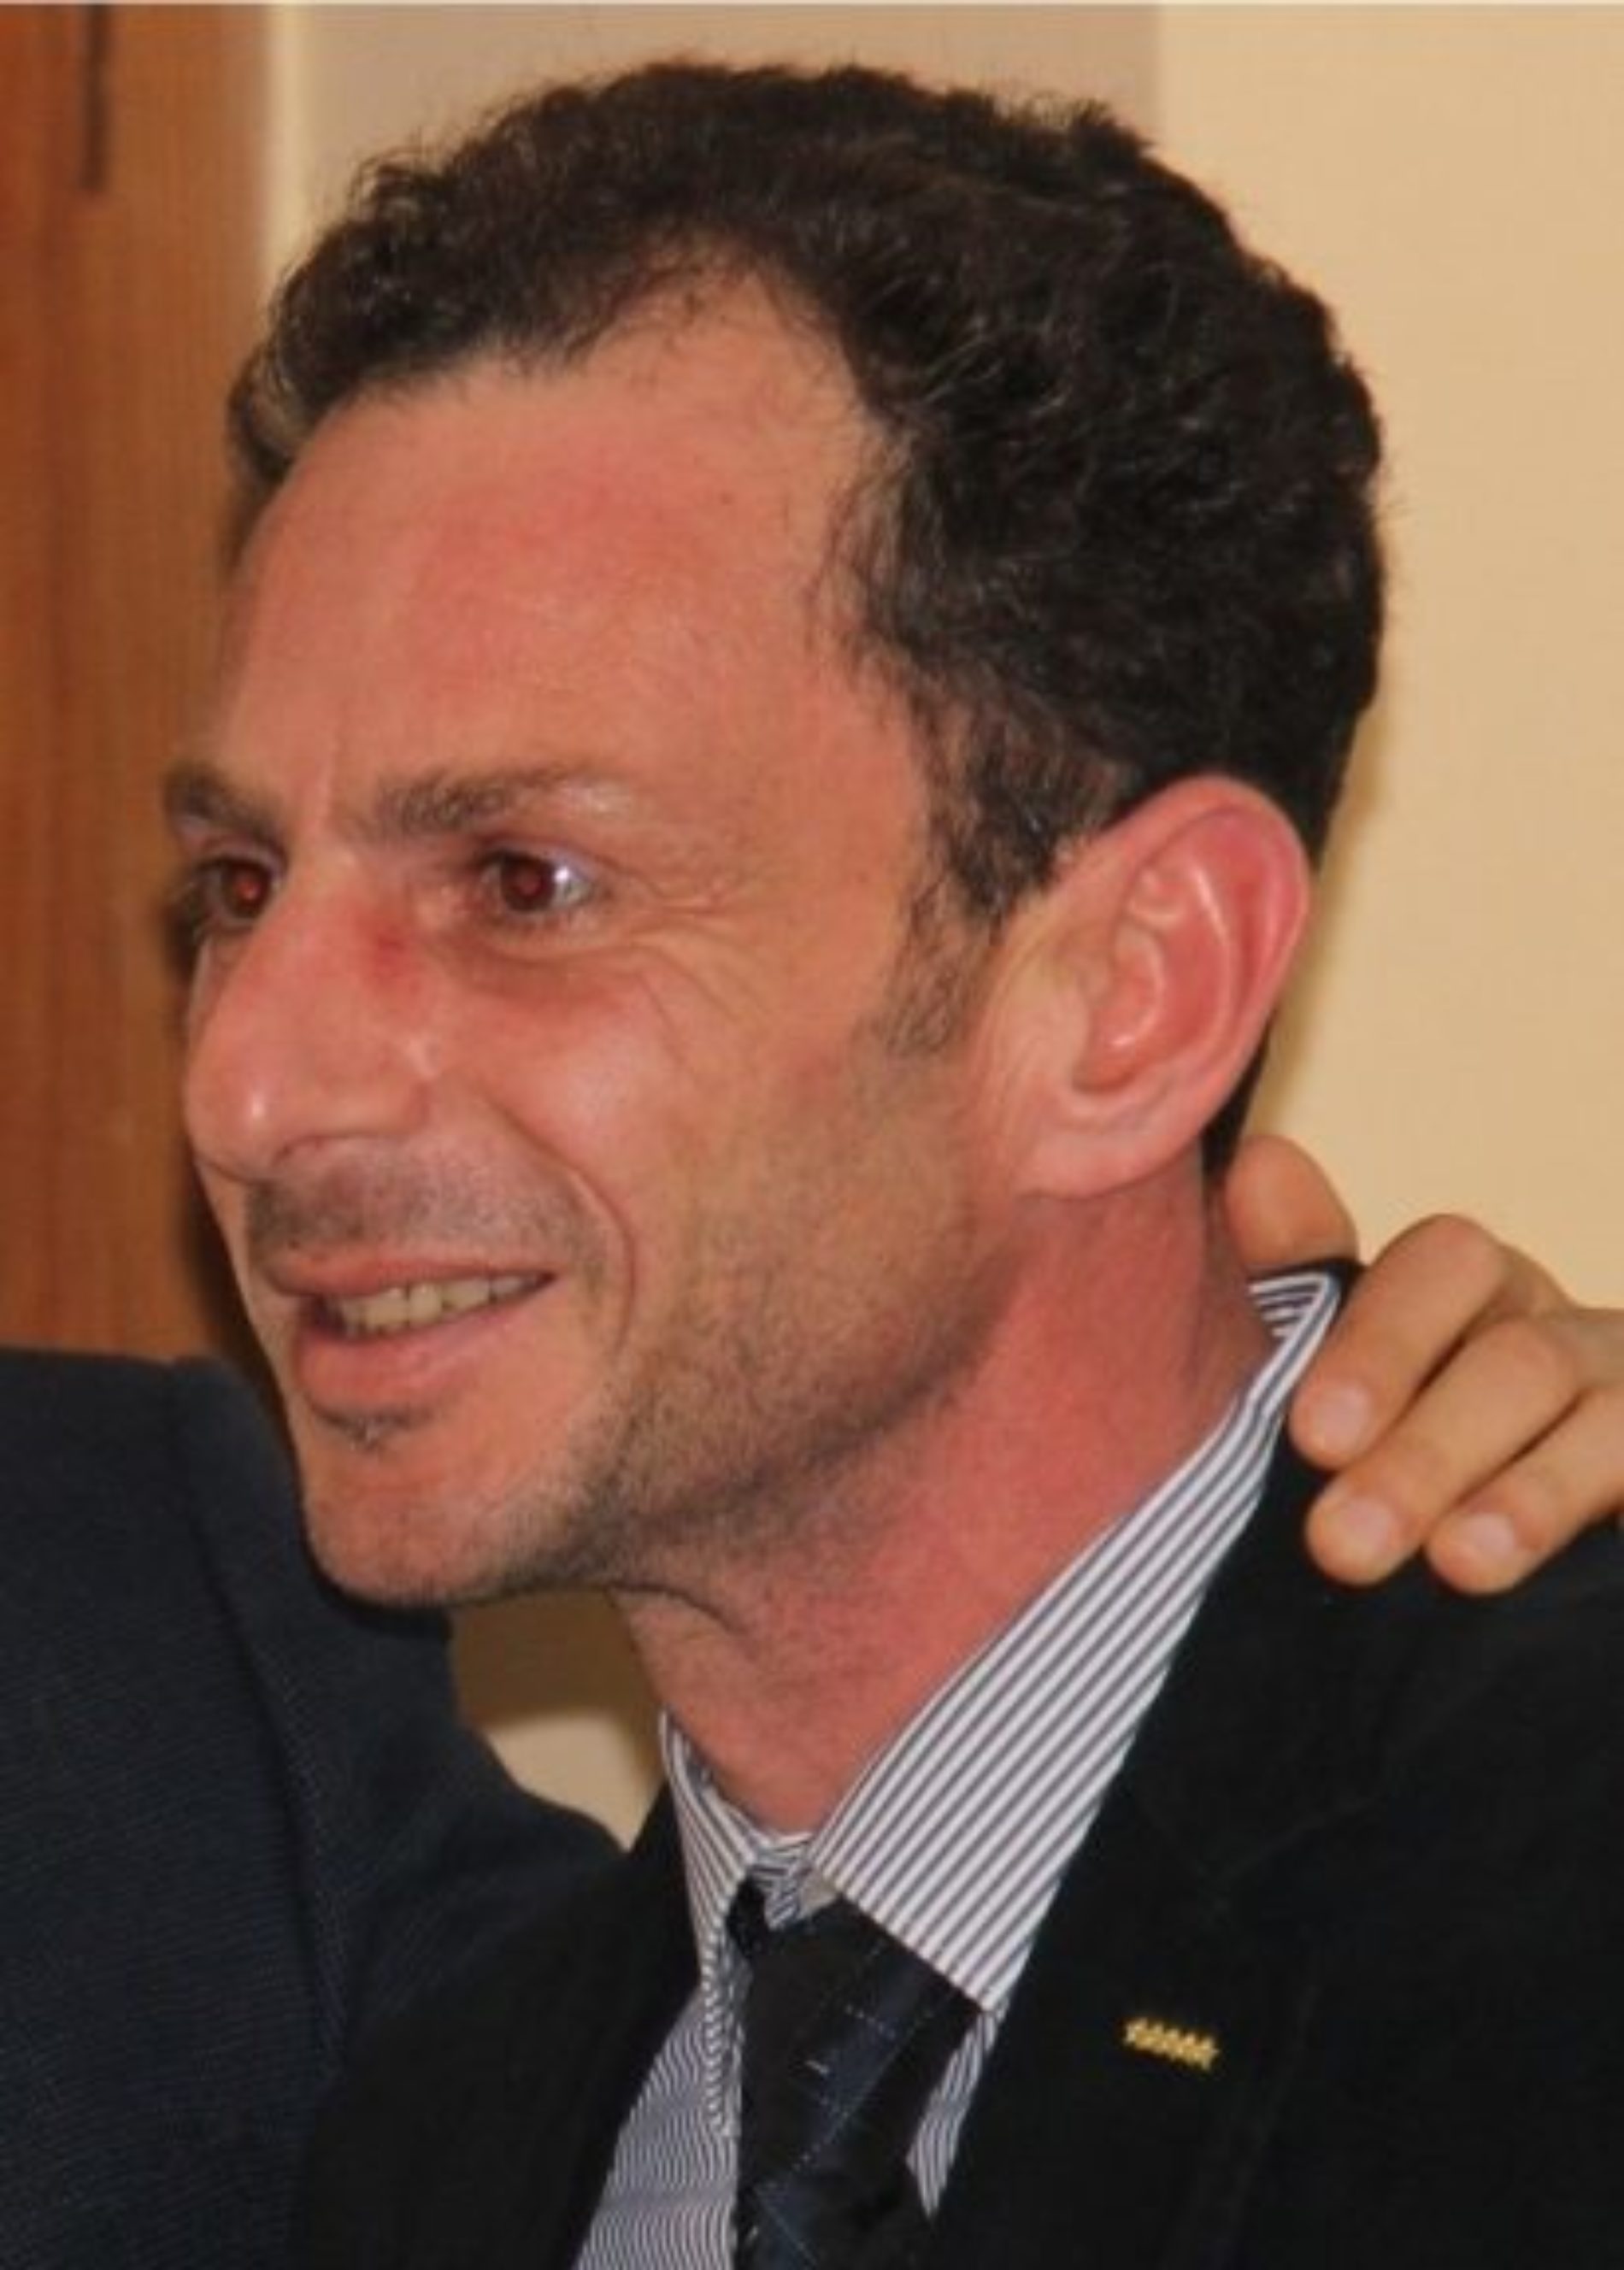 Arriva l’ufficialità da parte del M5S nazionale: Salvatore Centonze si candida a sindaco di Barrafranca